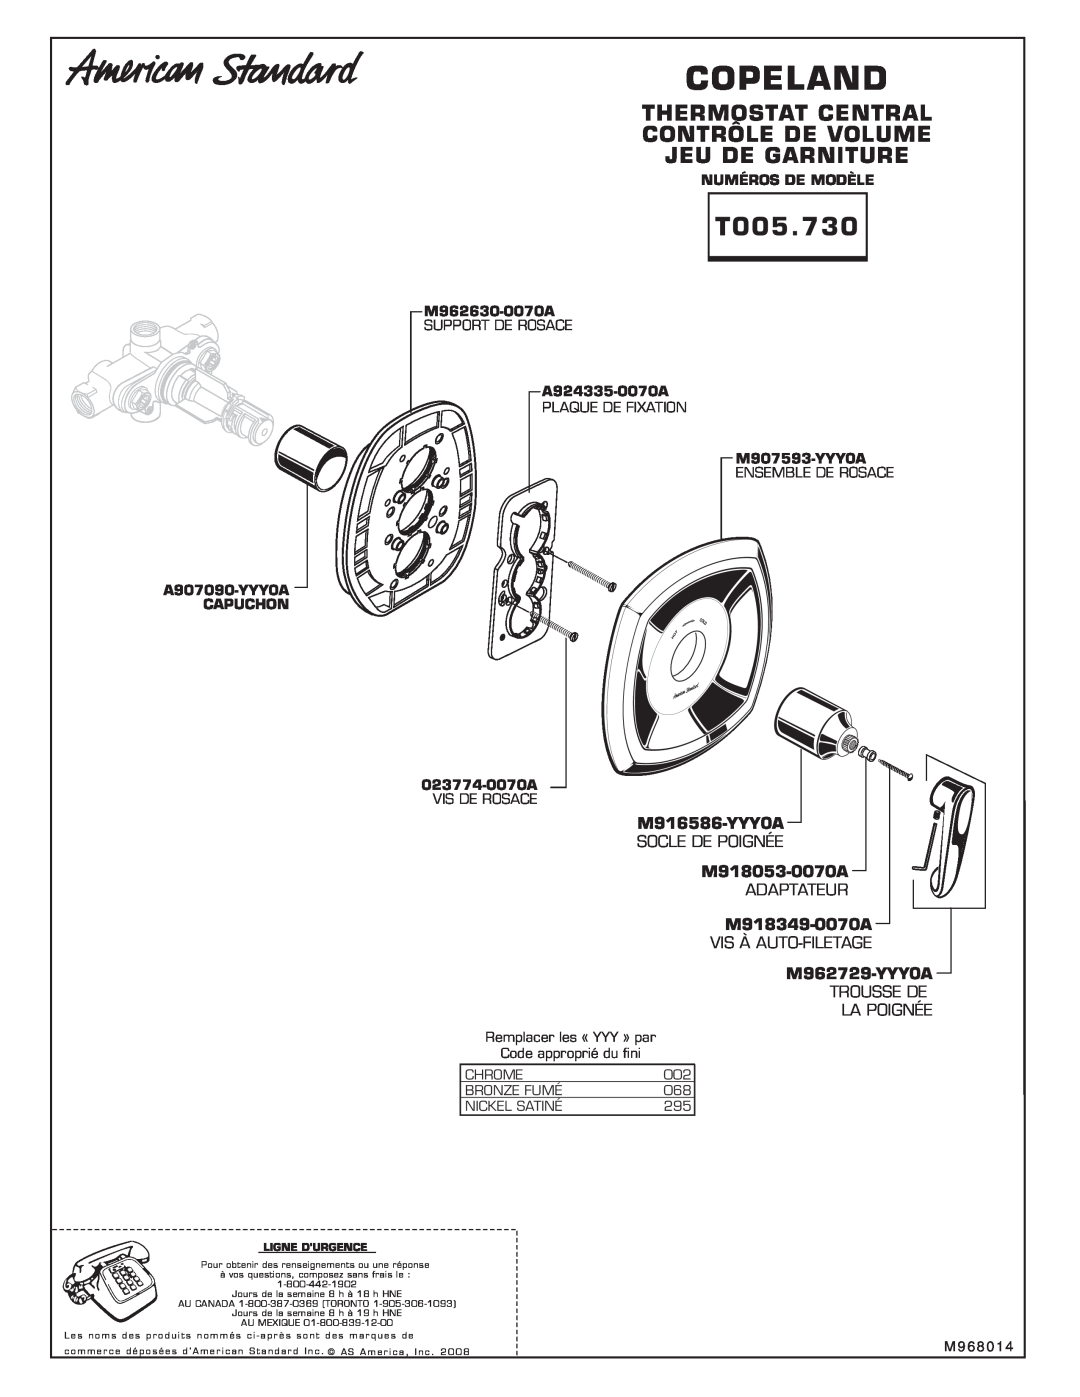 American Standard T005.730 Thermostat Central Contrôle De Volume Jeu De Garniture, Copeland, M916586-YYY0A, M918053-0070A 